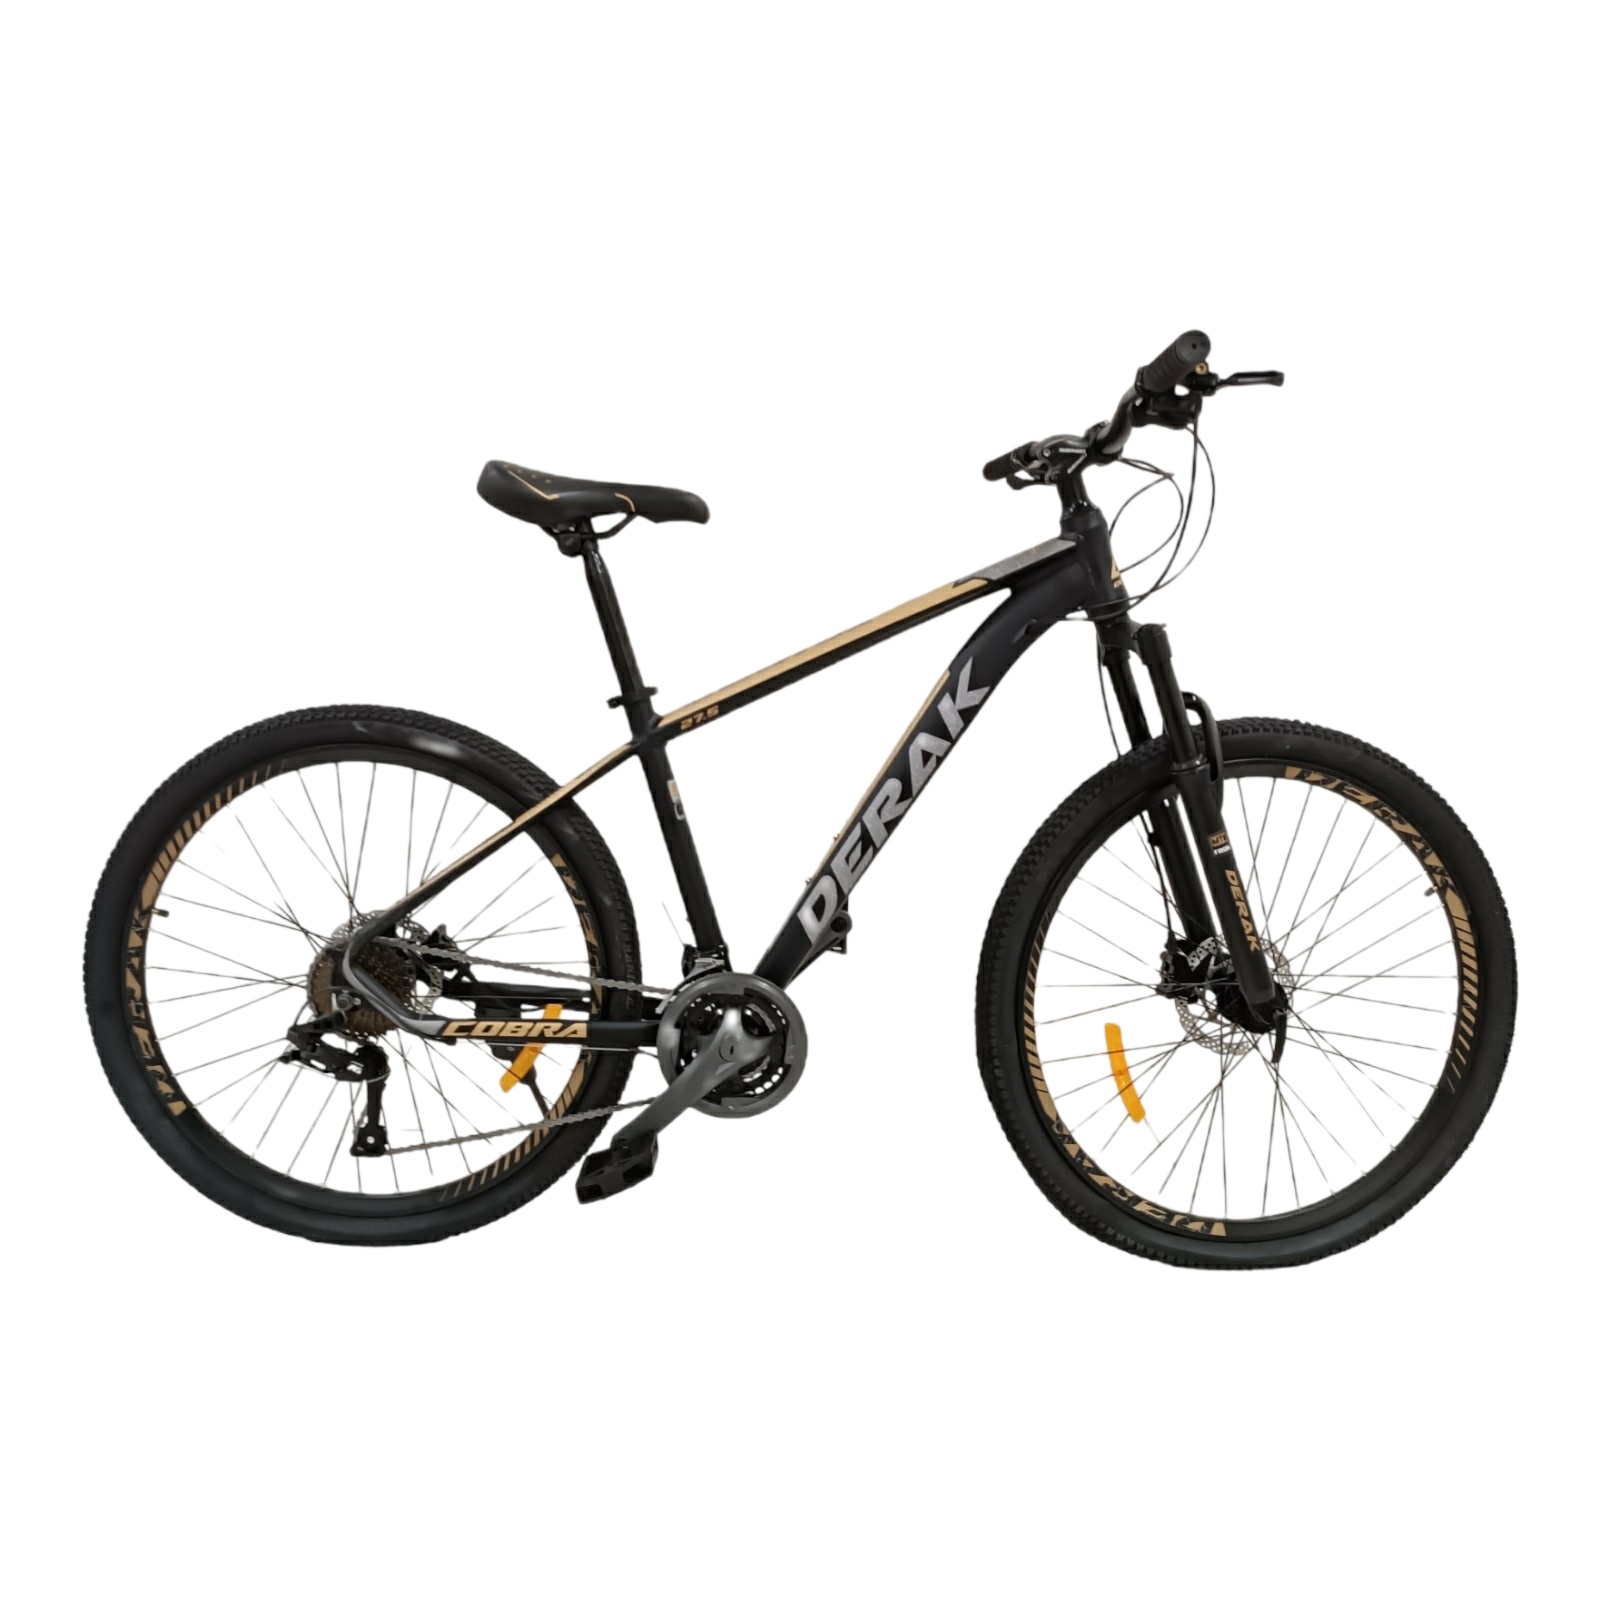 نکته خرید - قیمت روز دوچرخه کوهستان دراک کبری فول آلومینیوم سایز 27.5 خرید